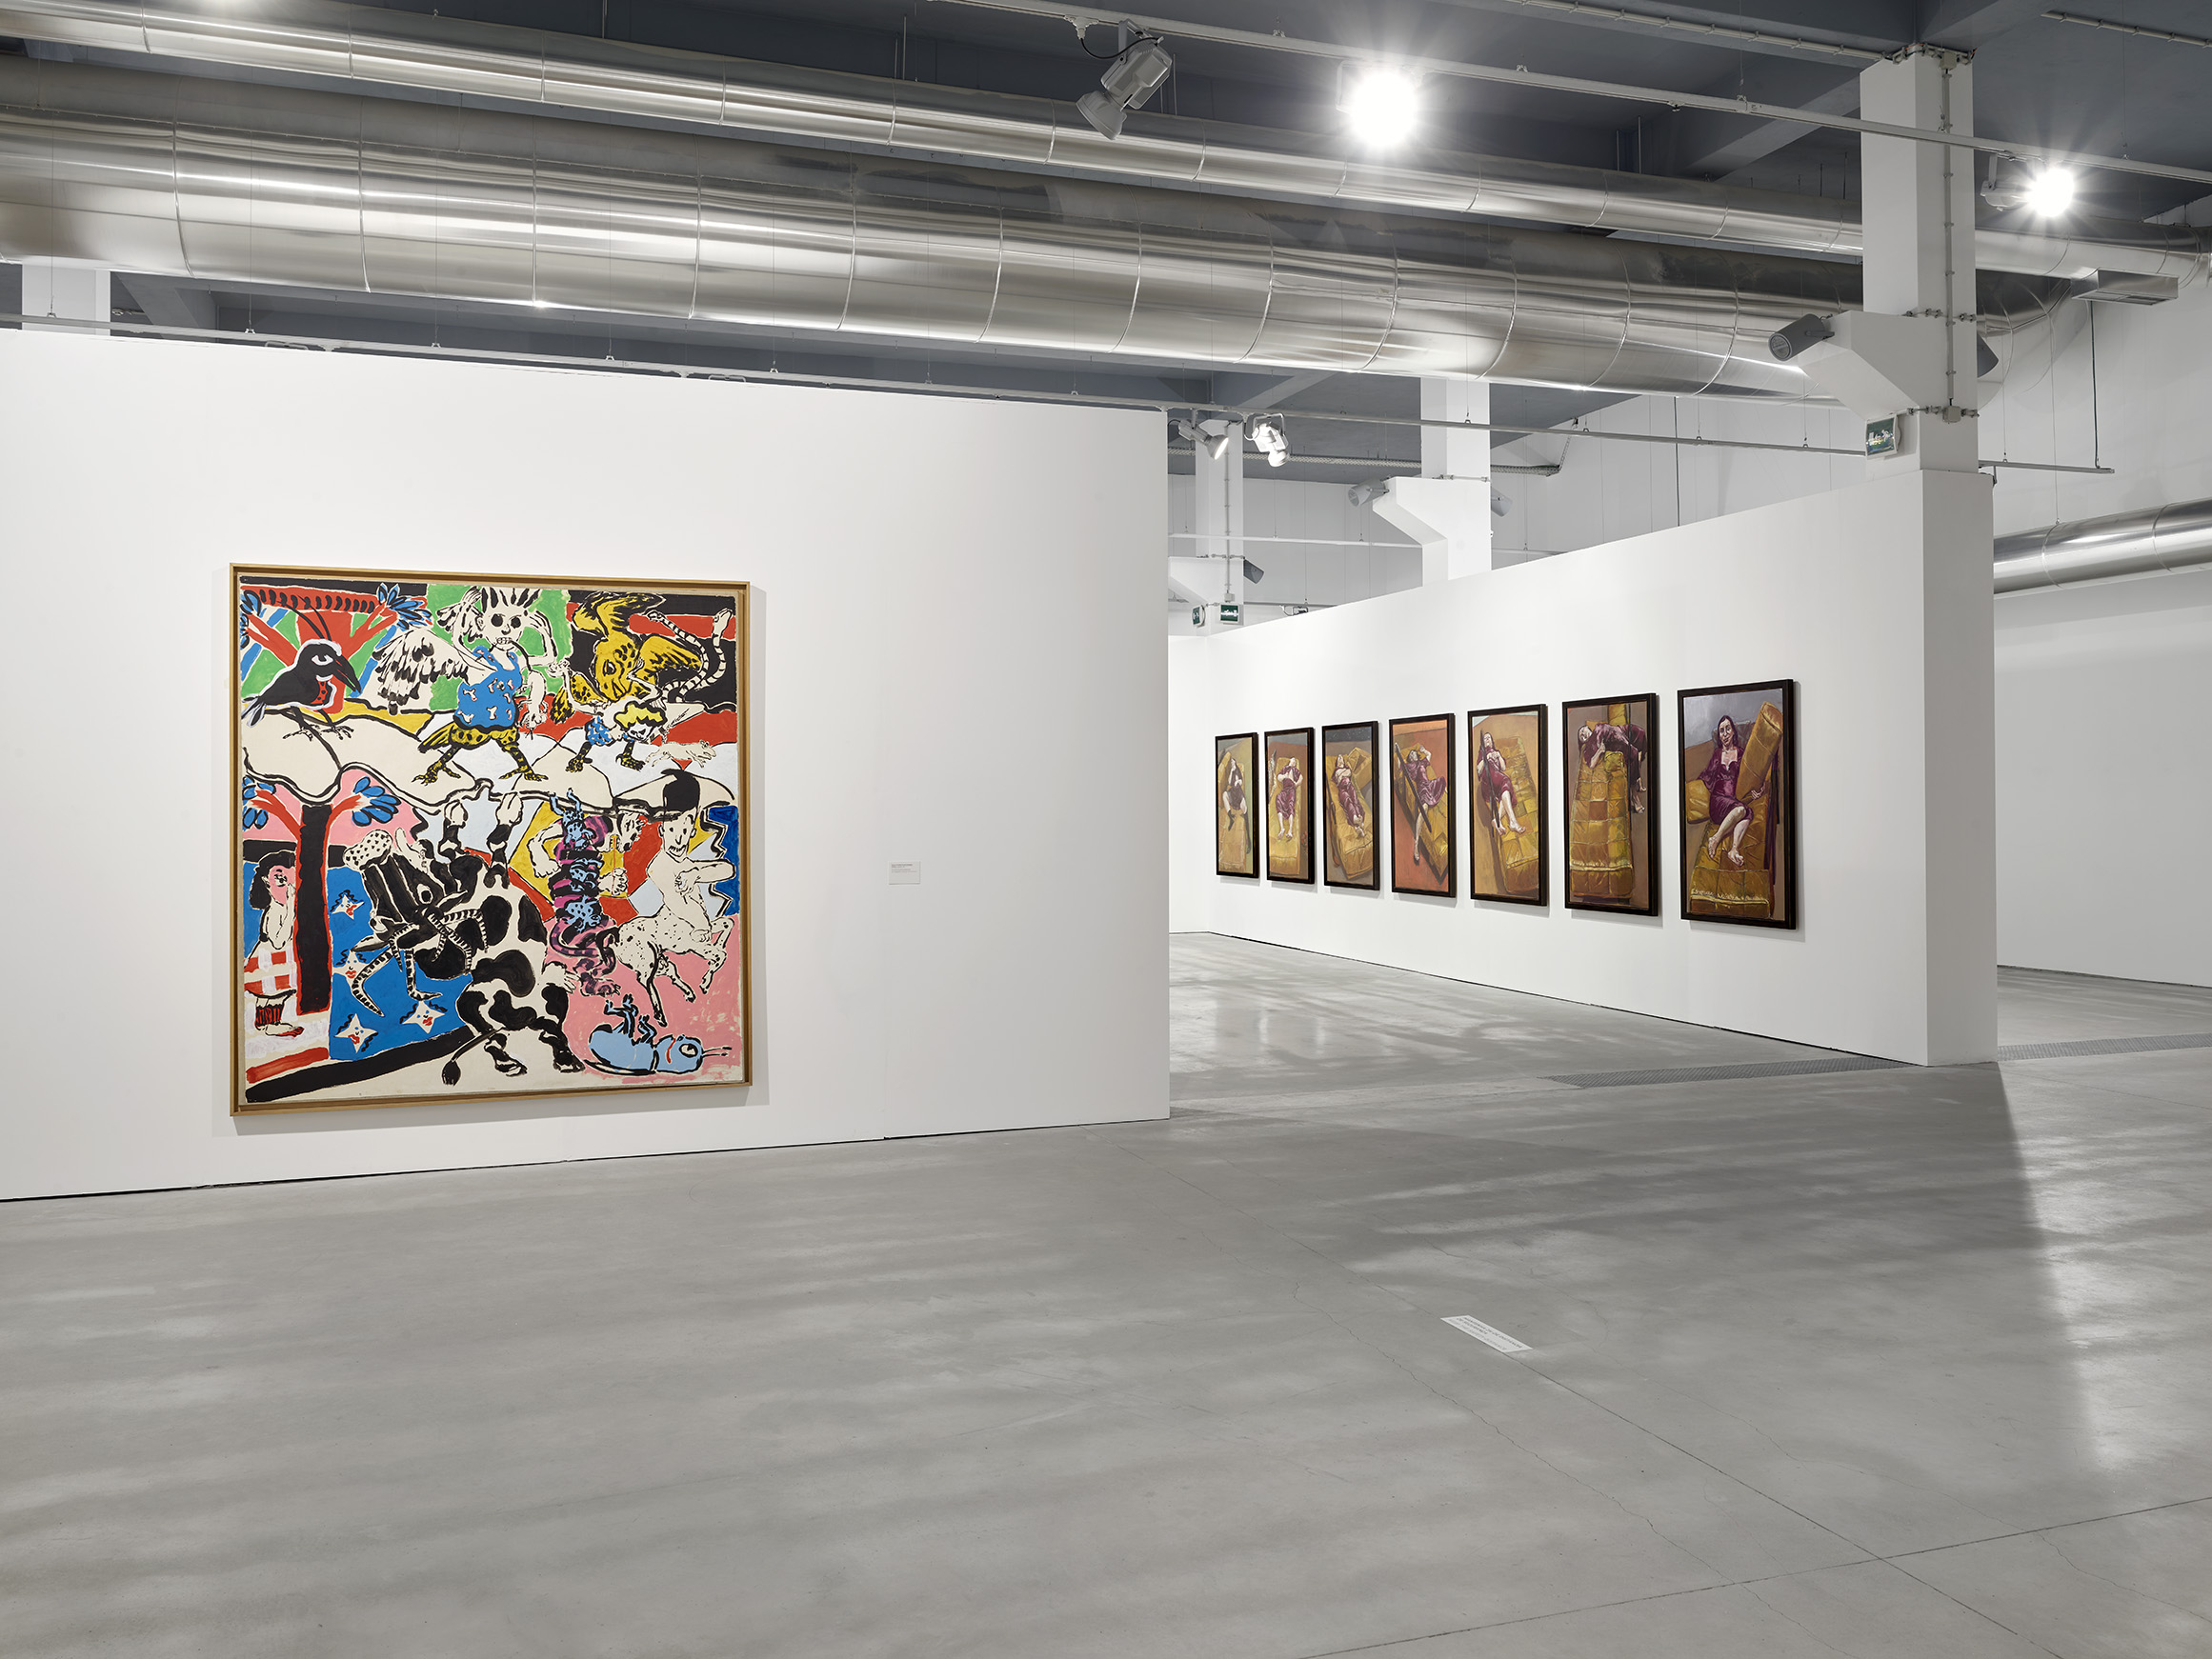 Centro de Arte Oliva, em São João da Madeira, expõe obras de Vhils, Álvaro Lapa, Artur Cruzeiro Seixas, Francis Smith e Rui Chafes